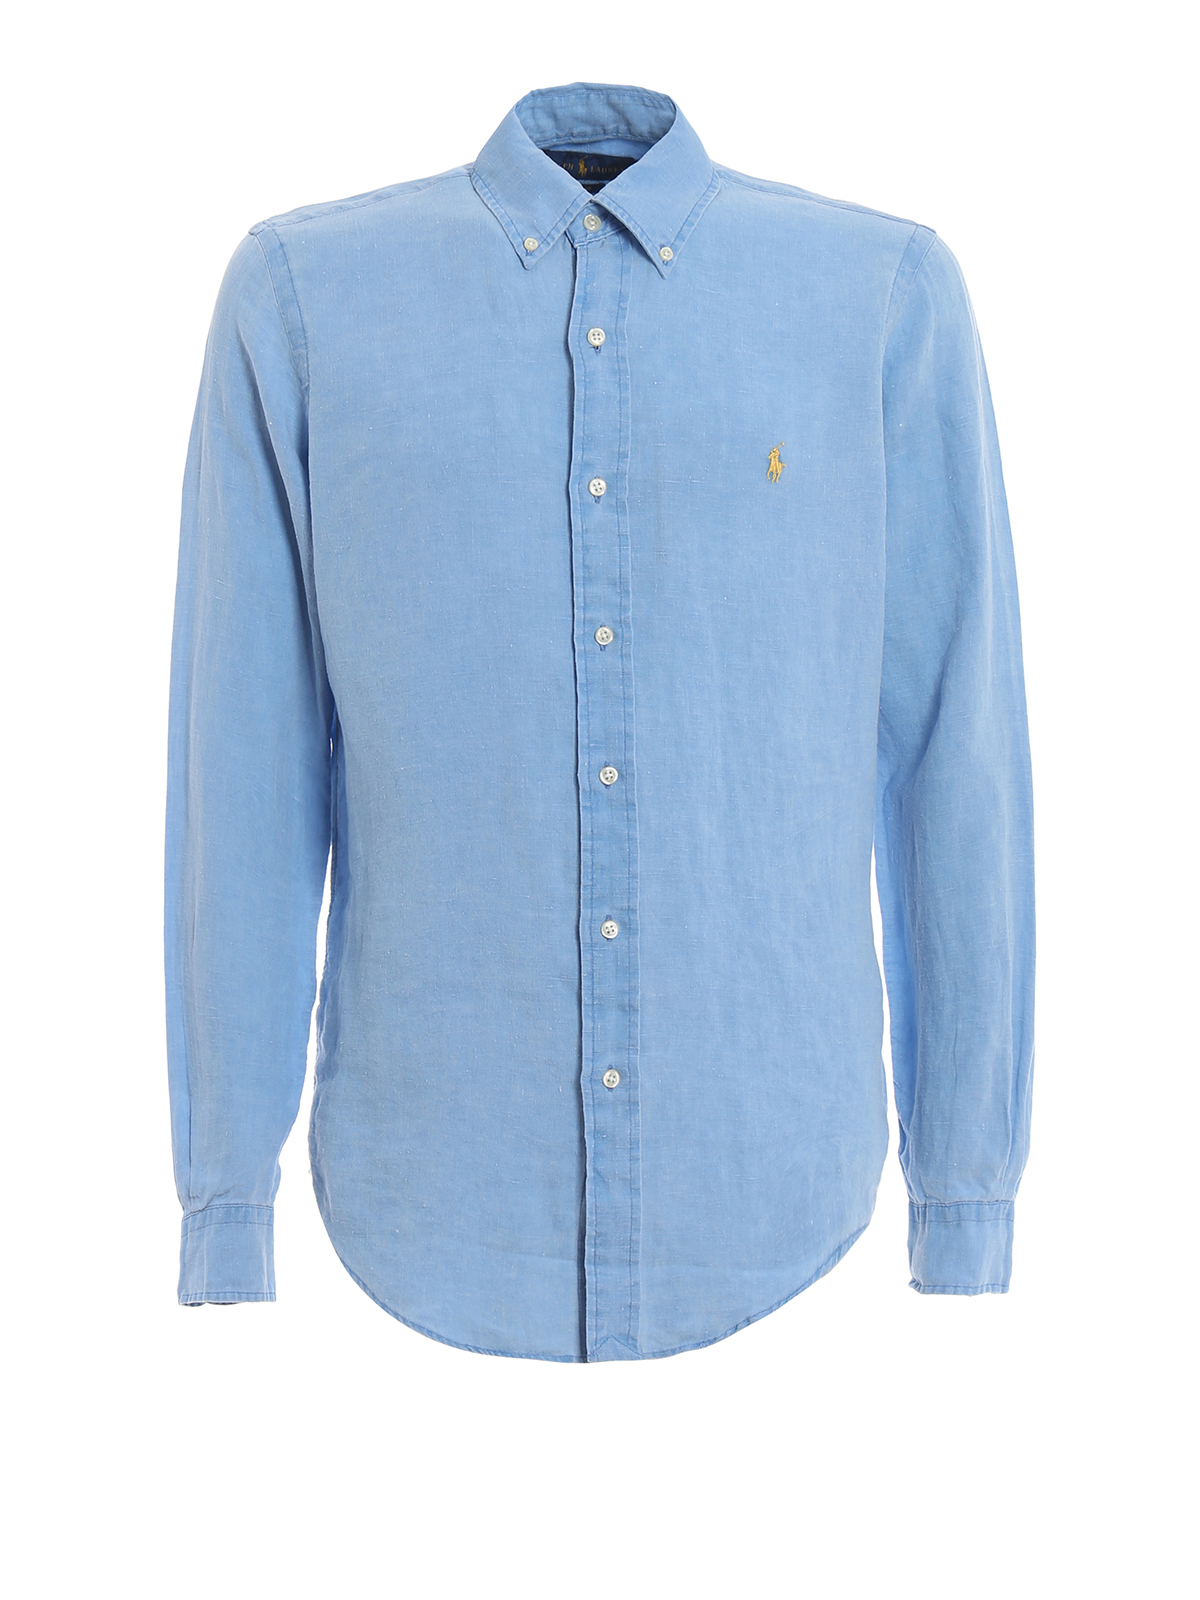 Shirts Polo Ralph Lauren - Light blue linen b/d shirt - 710744906009